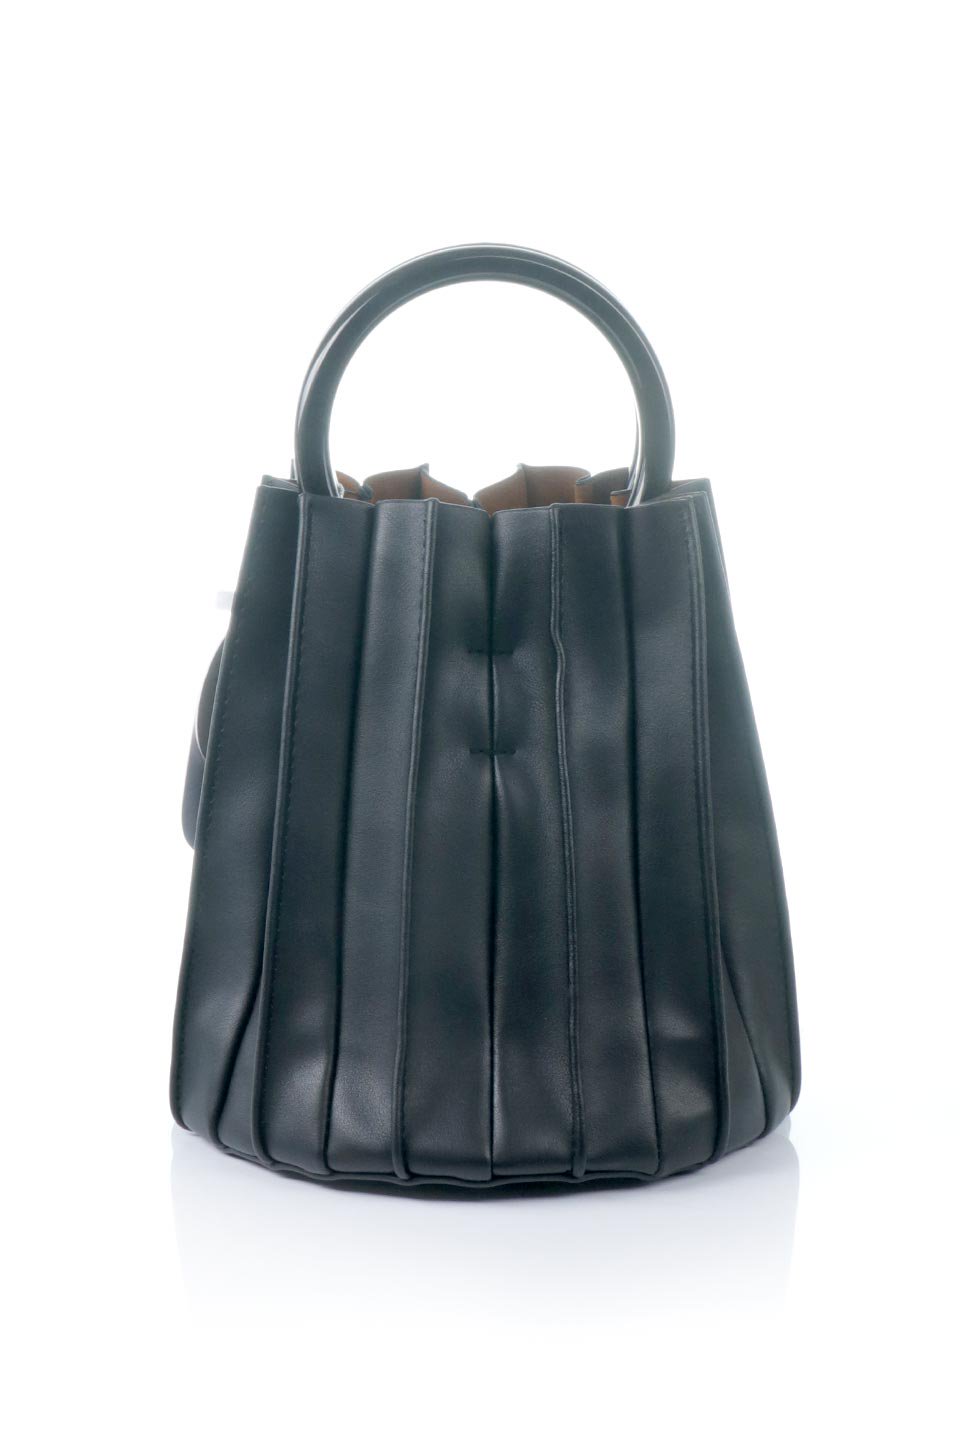 meliebiancoのLily(Black)アコーディオンプリーツ・バケツバッグ/海外ファッション好きにオススメのインポートバッグとかばん、MelieBianco（メリービアンコ）のバッグやハンドバッグ。ビーガンレザーのアコーディオンプリーツが特徴のバケツ型バッグ。ハンドバッグとしてもストラップを付けてショルダーバッグとしても使用できます。